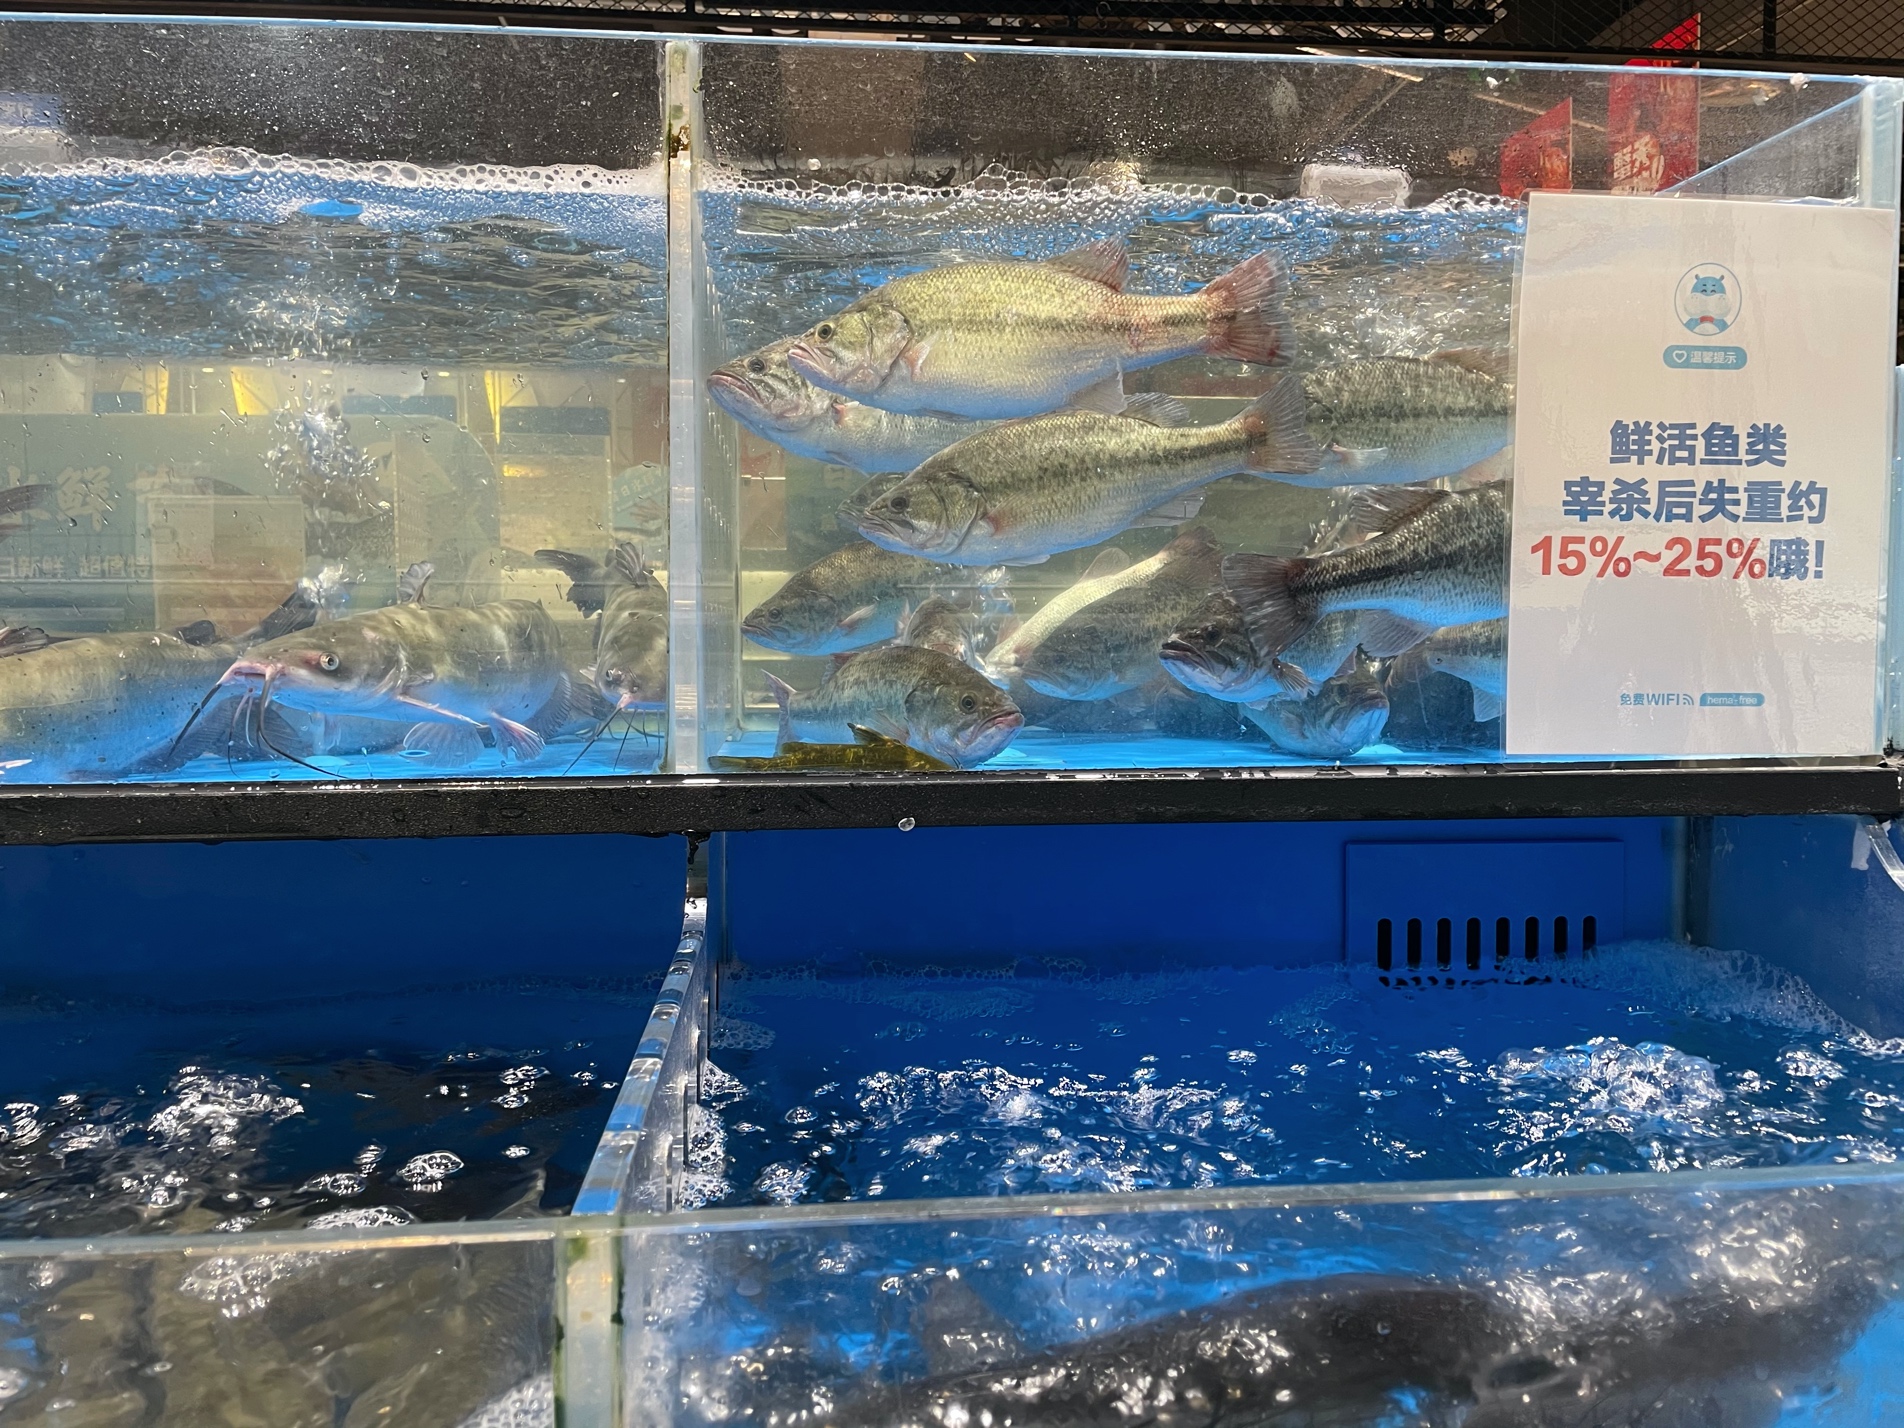 日销8万元!沅江生态大头鱼捕捞忙 - 益阳对外宣传官方网站